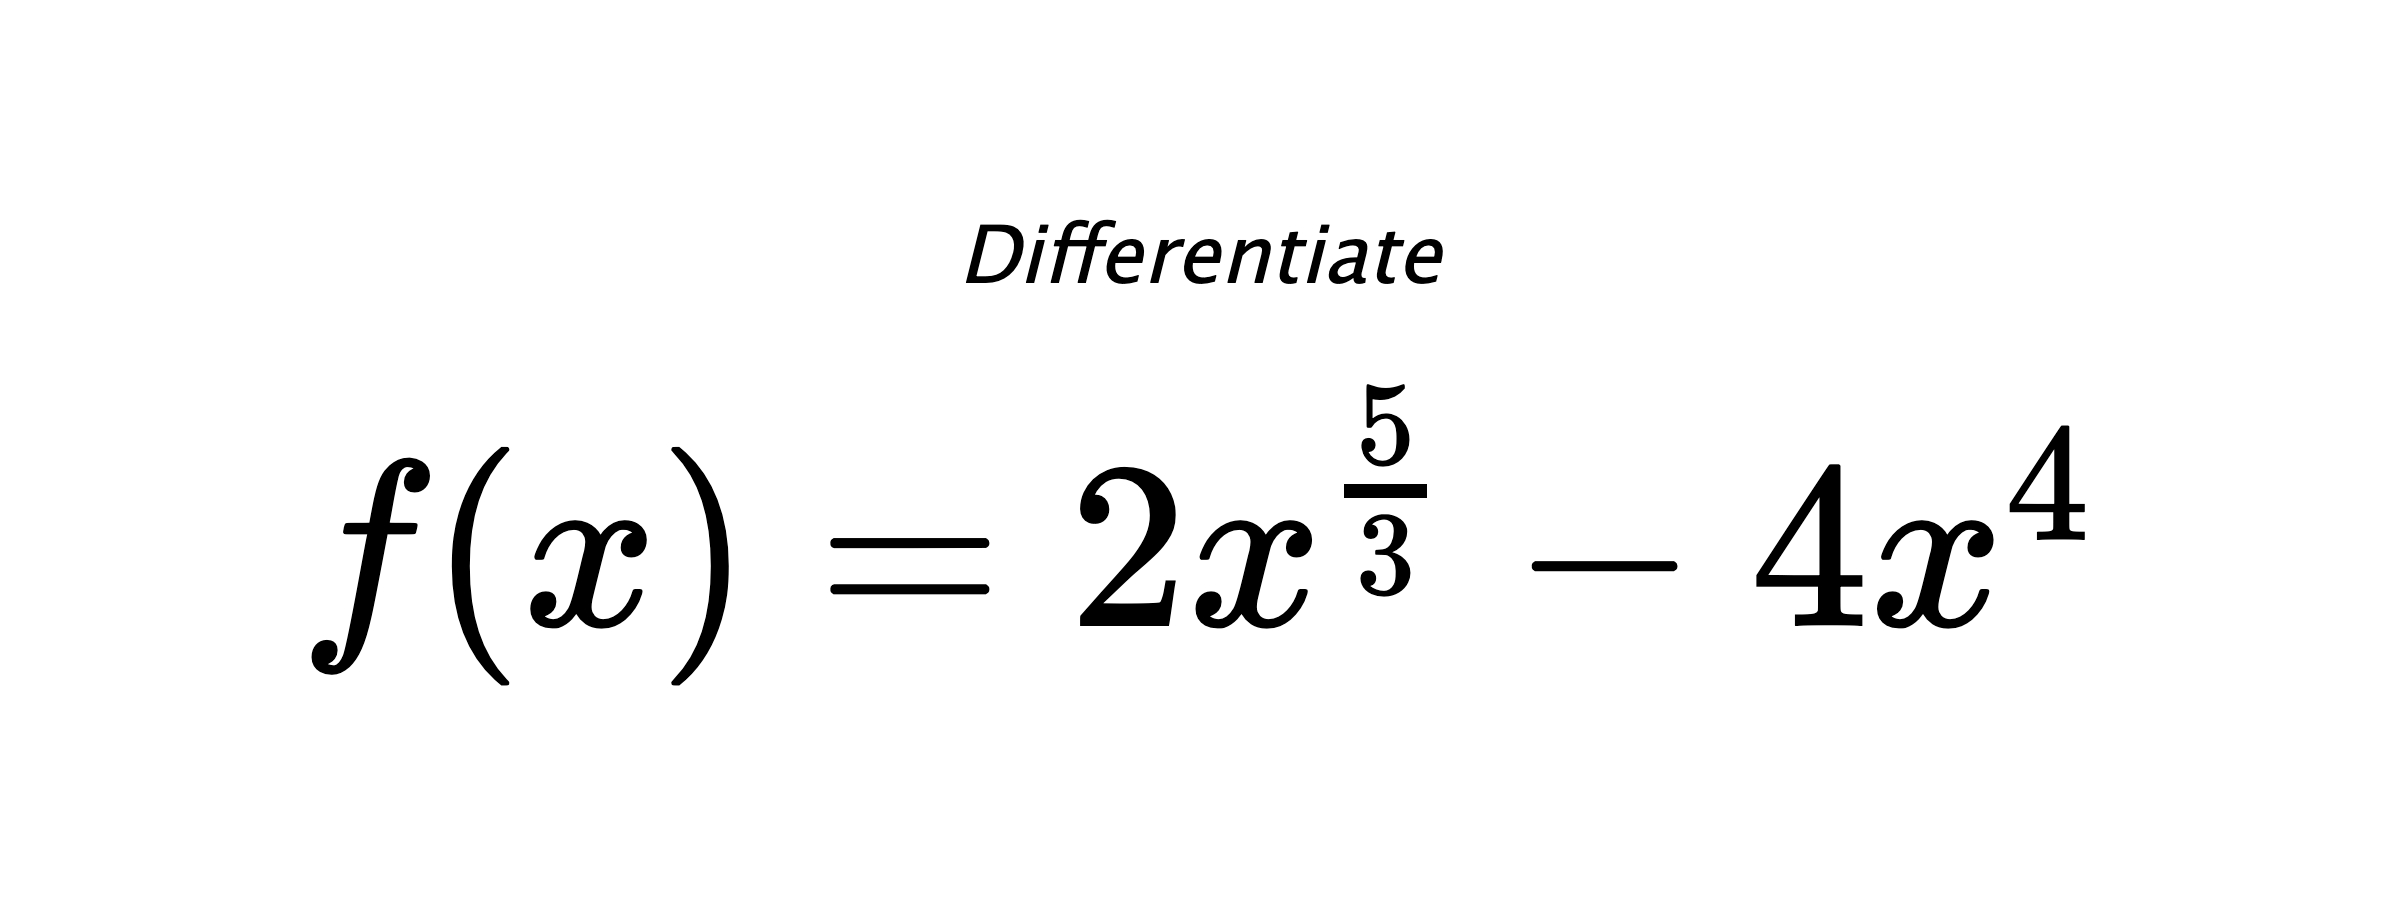 Differentiate $ f(x) = 2 x^{\frac{5}{3}} - 4 x^{4} $